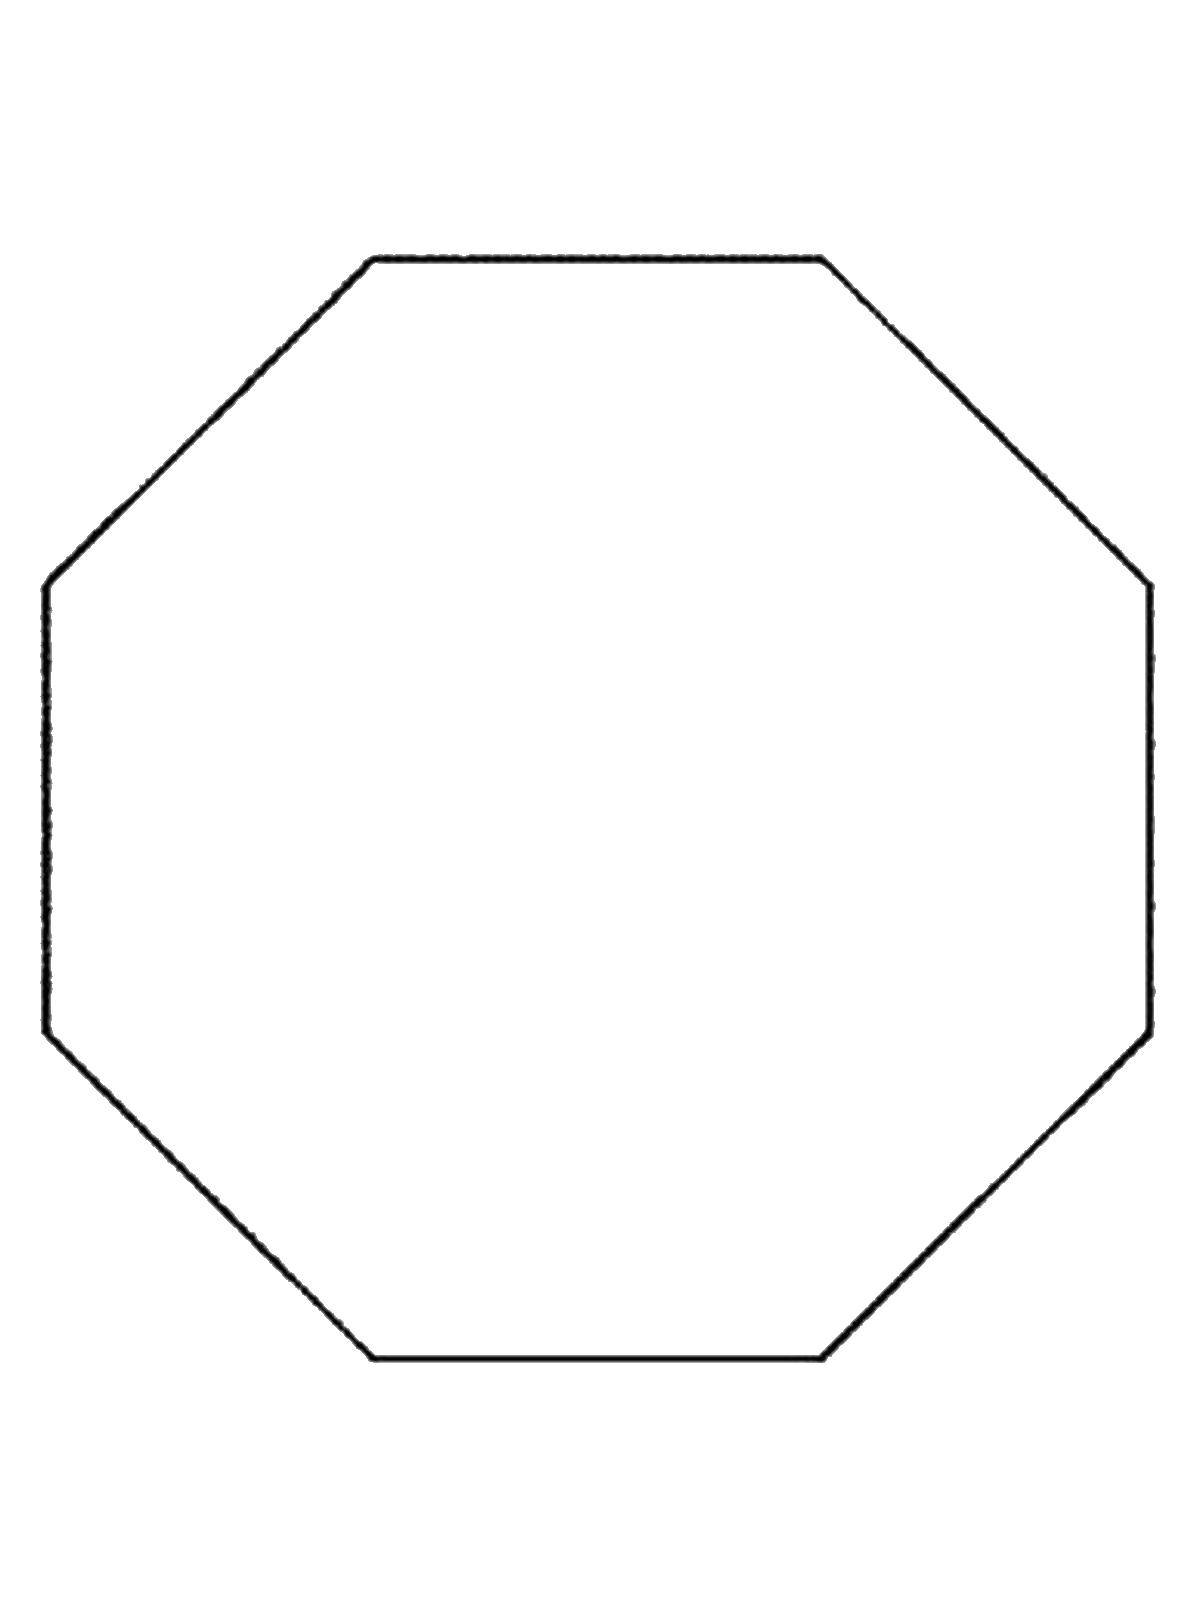 8 Восьмиугольник